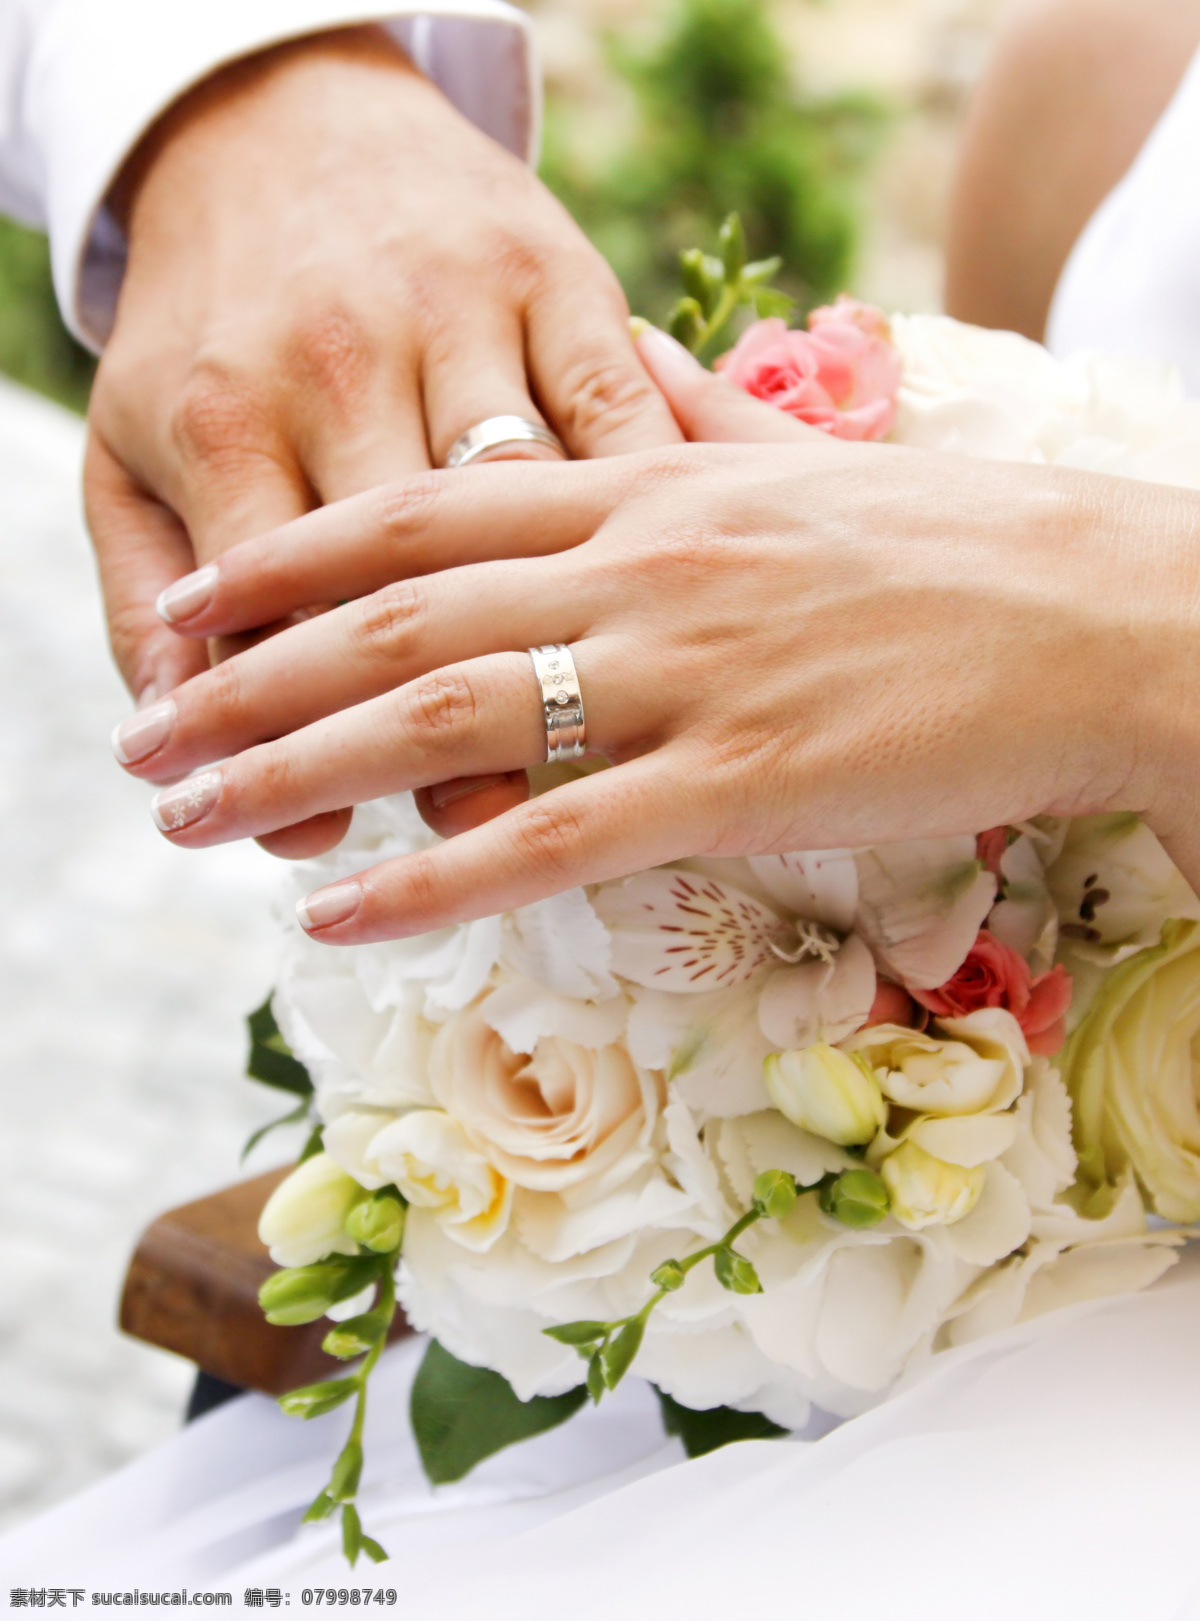 结婚 戒 结婚对戒 结婚戒指 双手 美丽鲜花 玫瑰花 其他类别 生活百科